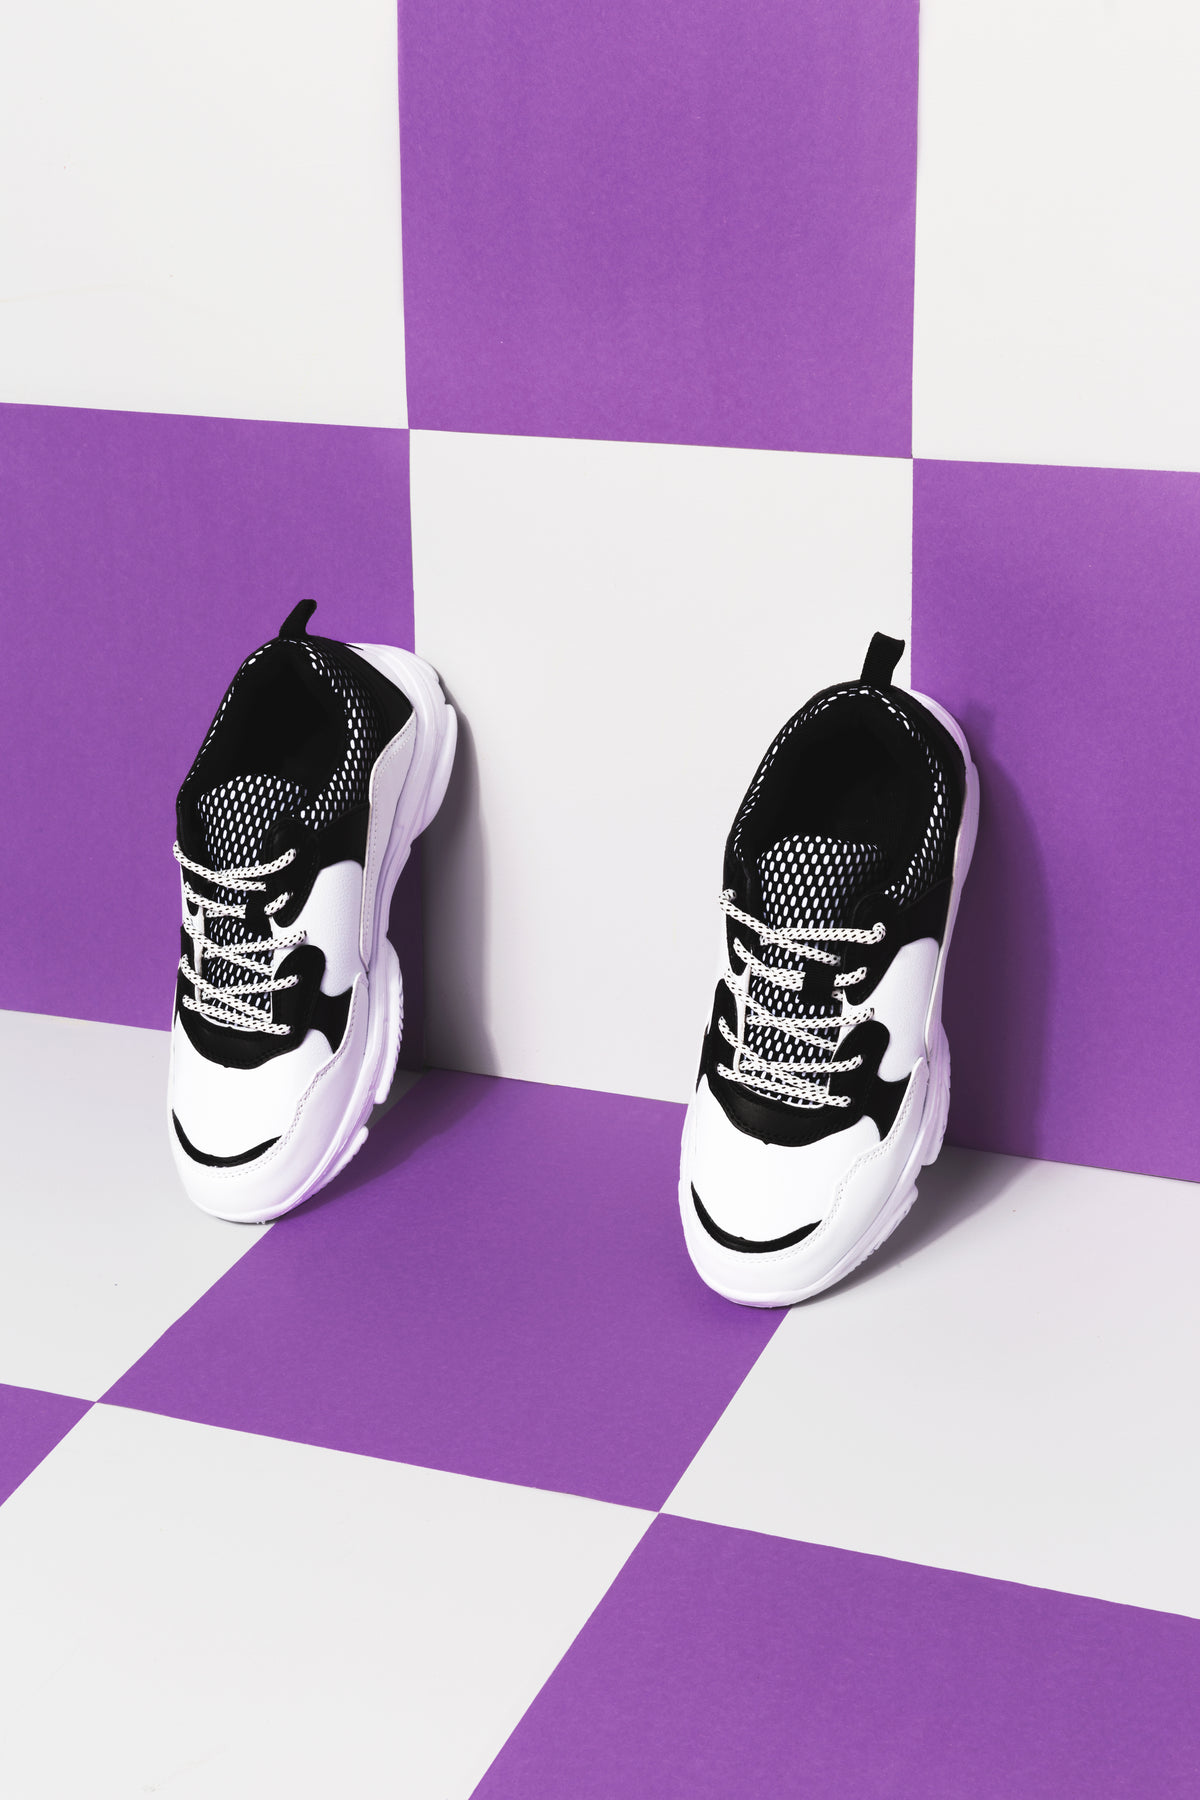 黑白相间的运动鞋与紫色和白色相衬